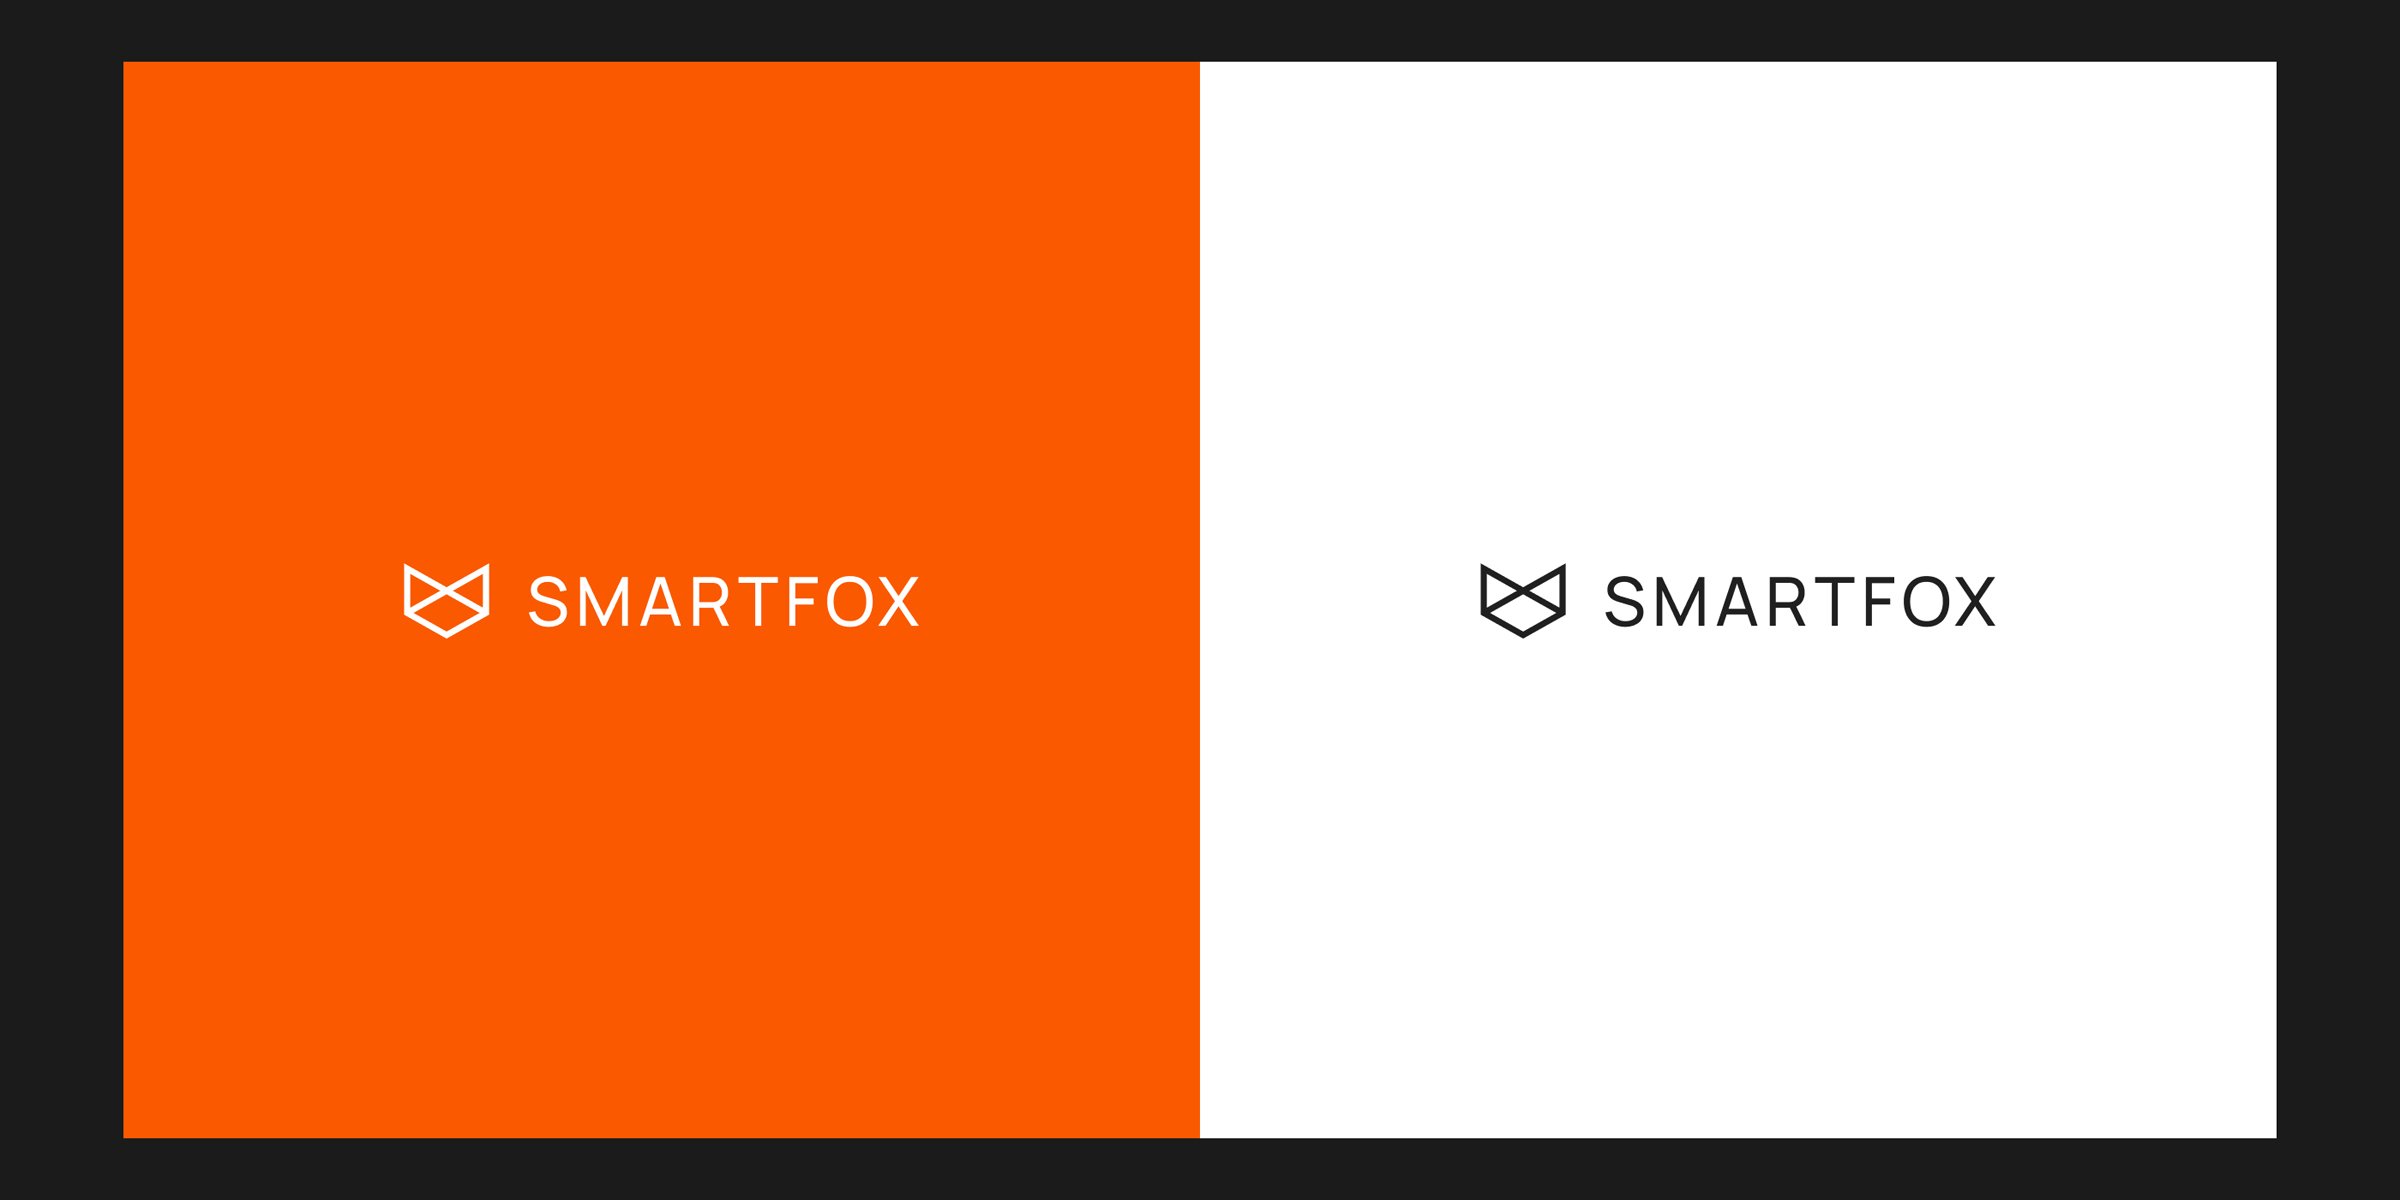 Smartfox